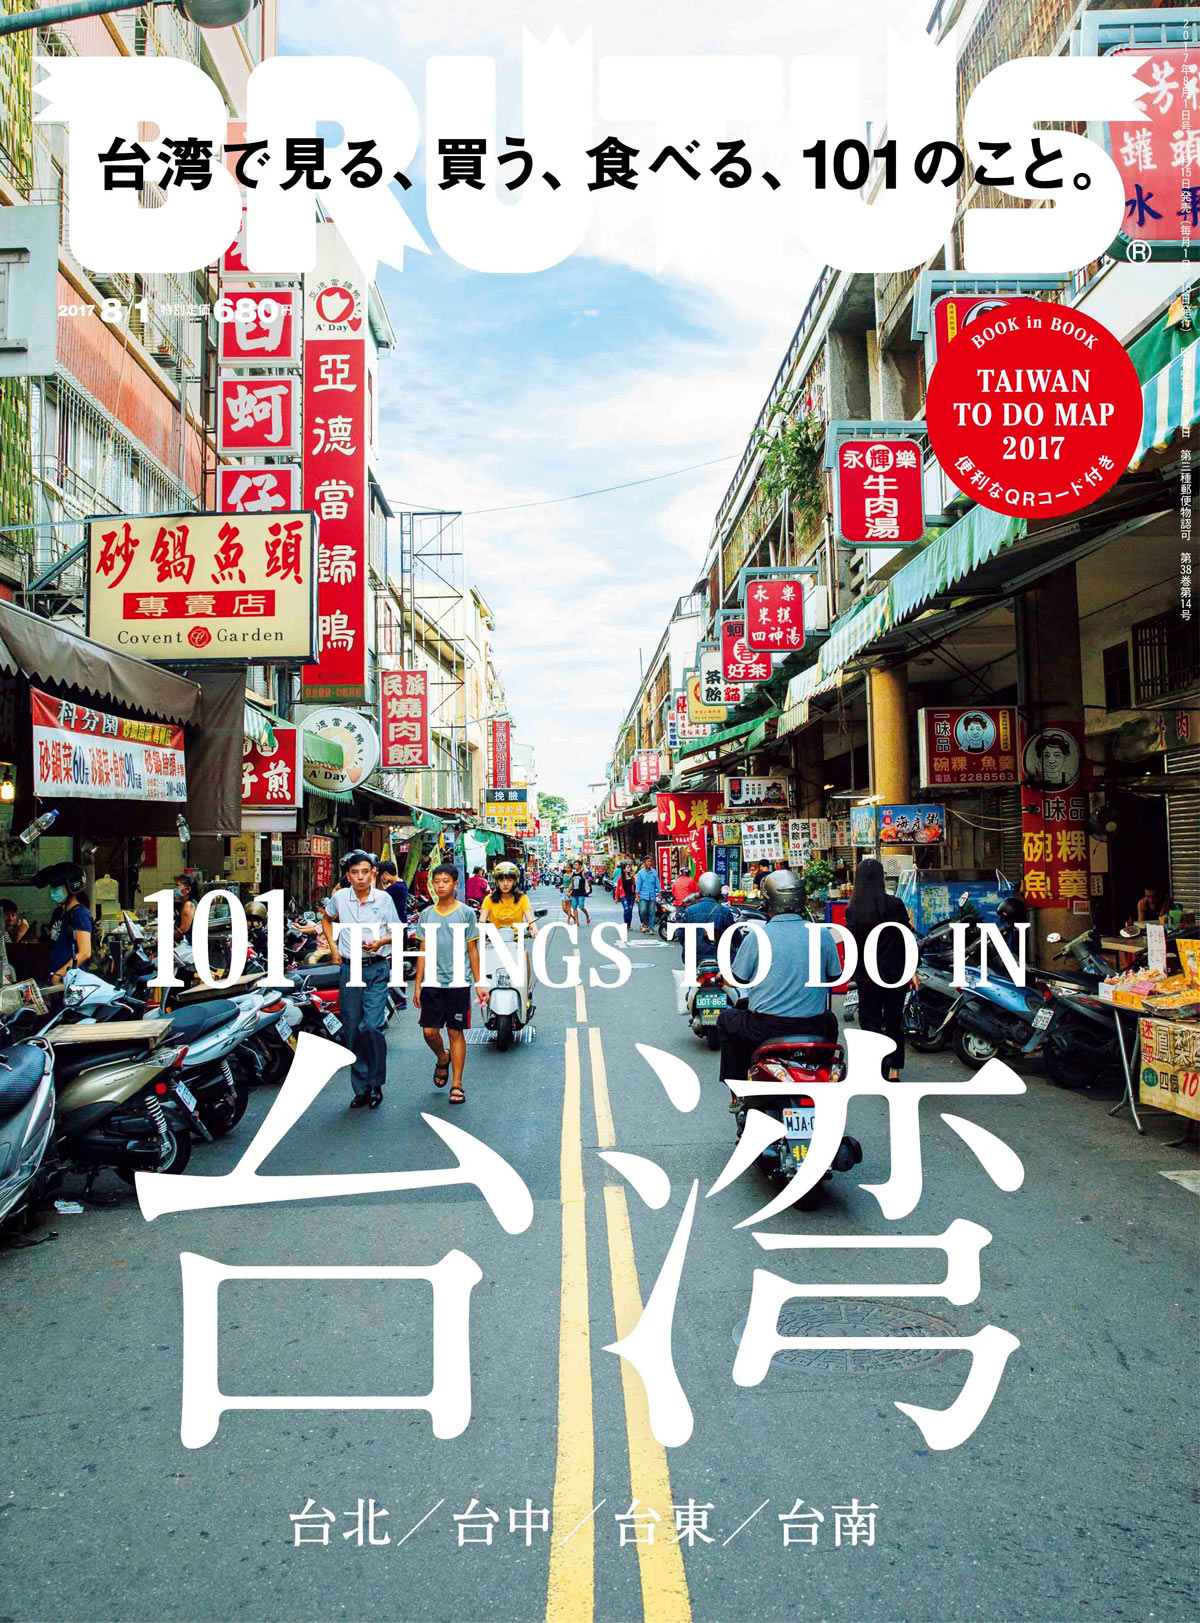 2017年7月15日発売の「台湾で見る、買う、食べる、101のこと。」の表紙